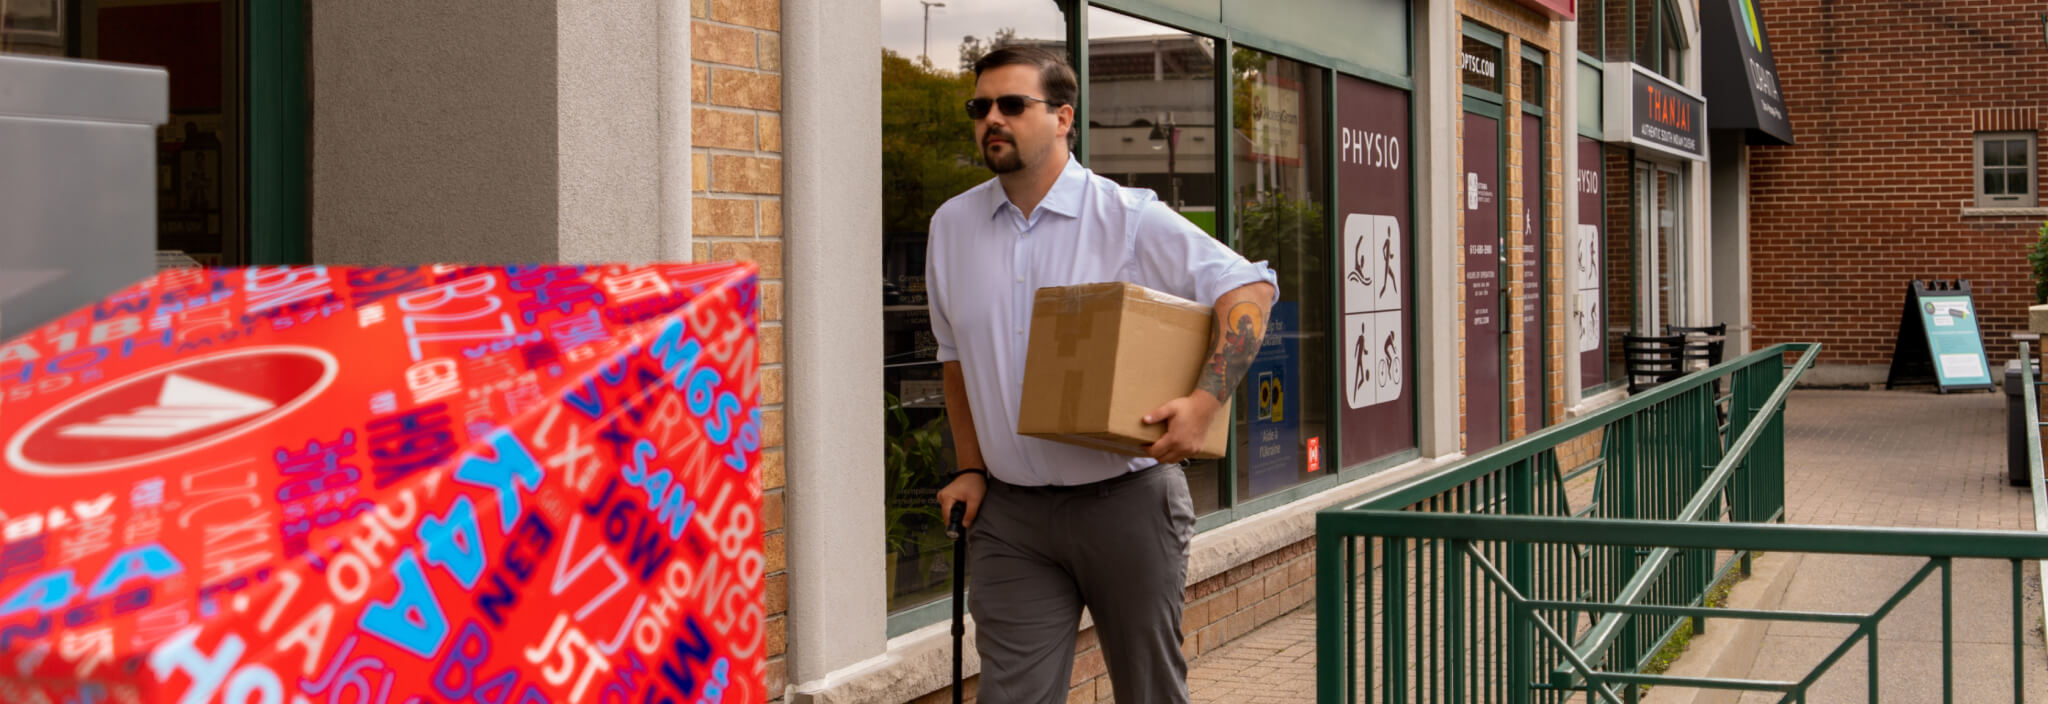 Un homme transportant un colis marche avec une canne sur une rampe de trottoir le long d’un magasin.